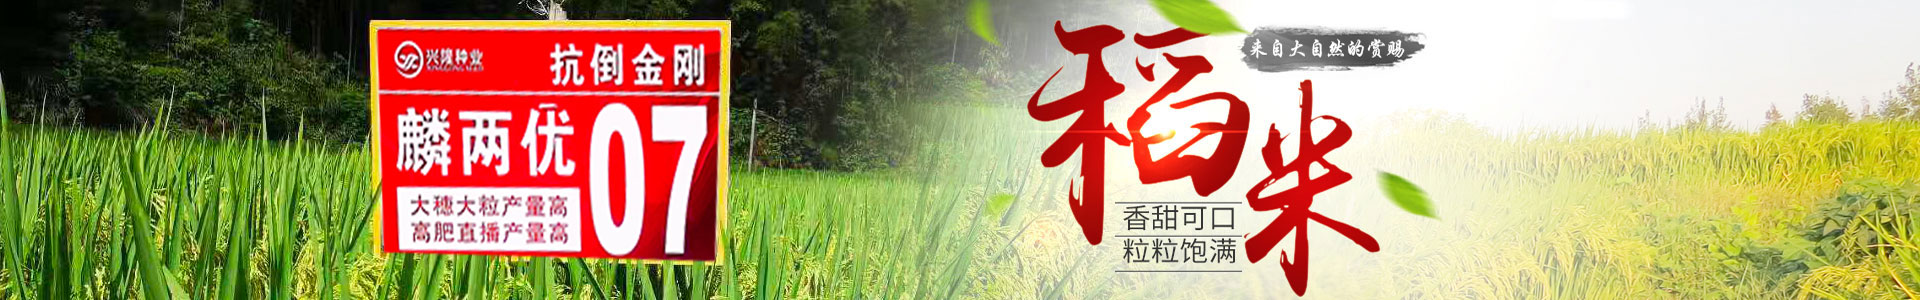 湖南兴隆种业有限公司_长沙稻谷种植与销售|长沙农作物品种的选育